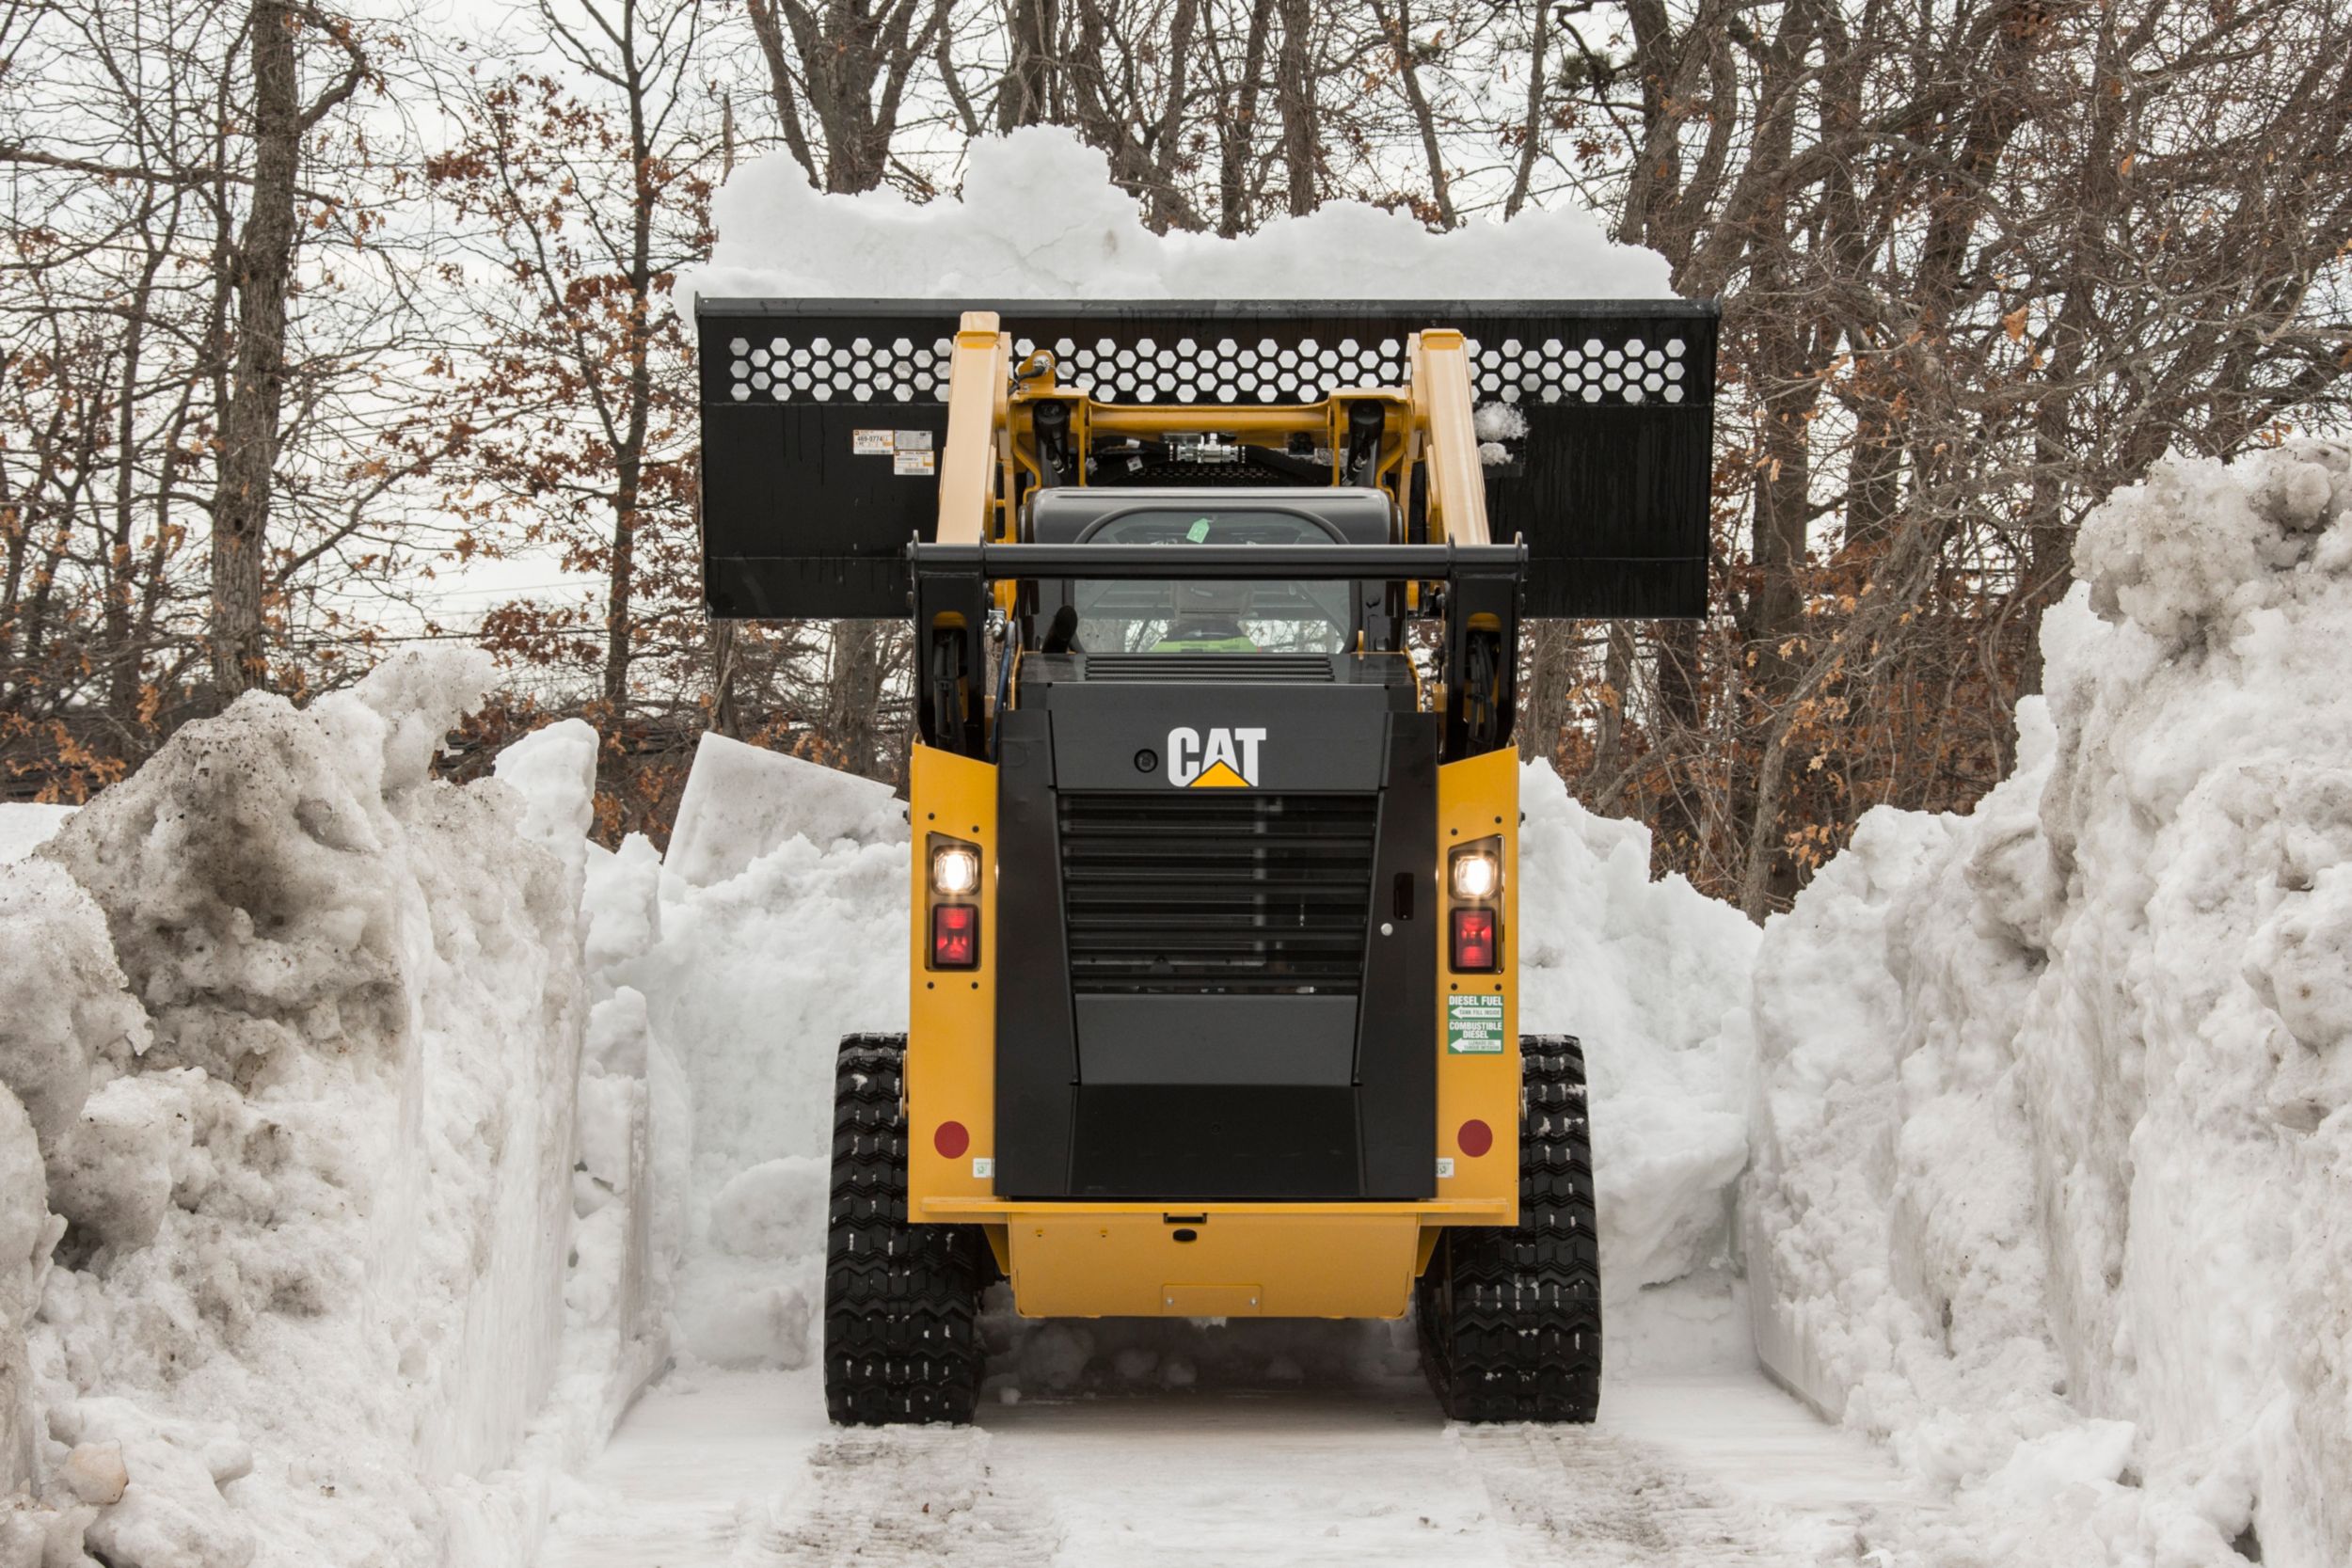 Łyżka do transportu iprzeładunku materiałów do ładowarek osterowaniu burtowym — zrzucanie śniegu